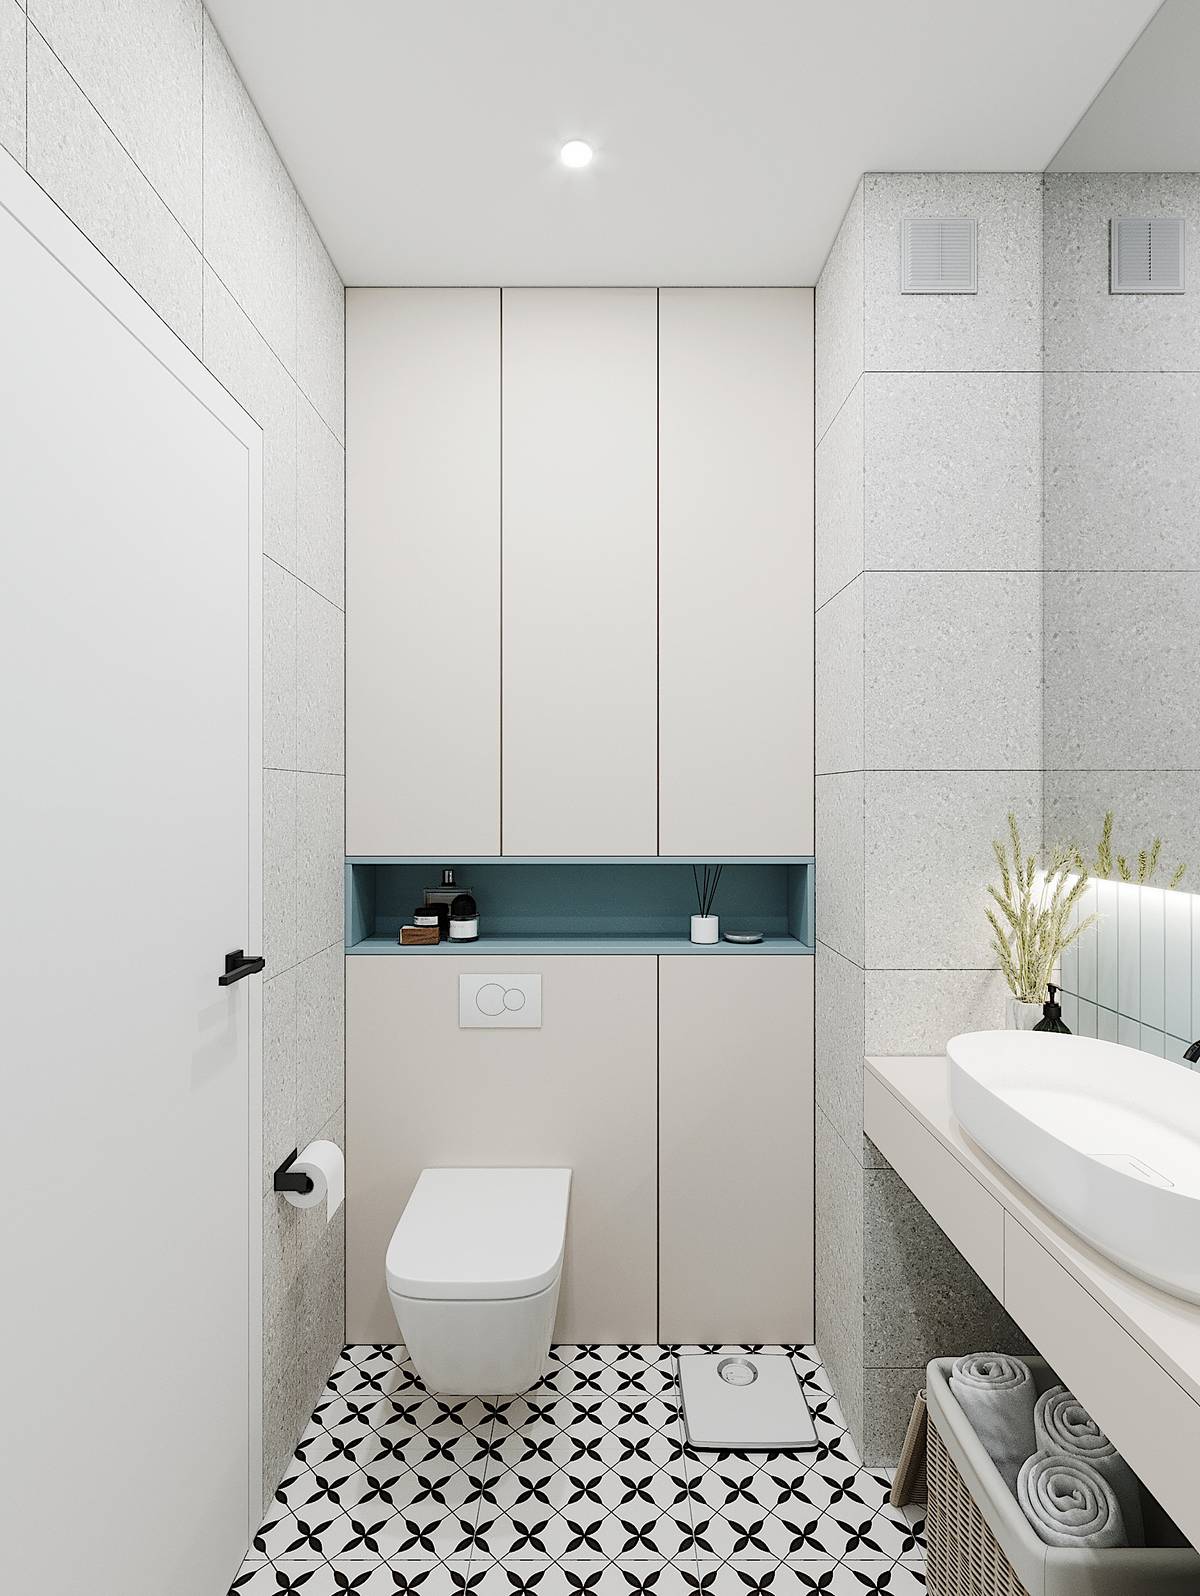 Phòng tắm sử dụng nội thất gắn tường như toilet để giải phóng diện tích mặt sàn. Tủ lưu trữ bố trí cao kịch trần để tối ưu hóa không gian phòng tắm nhỏ.